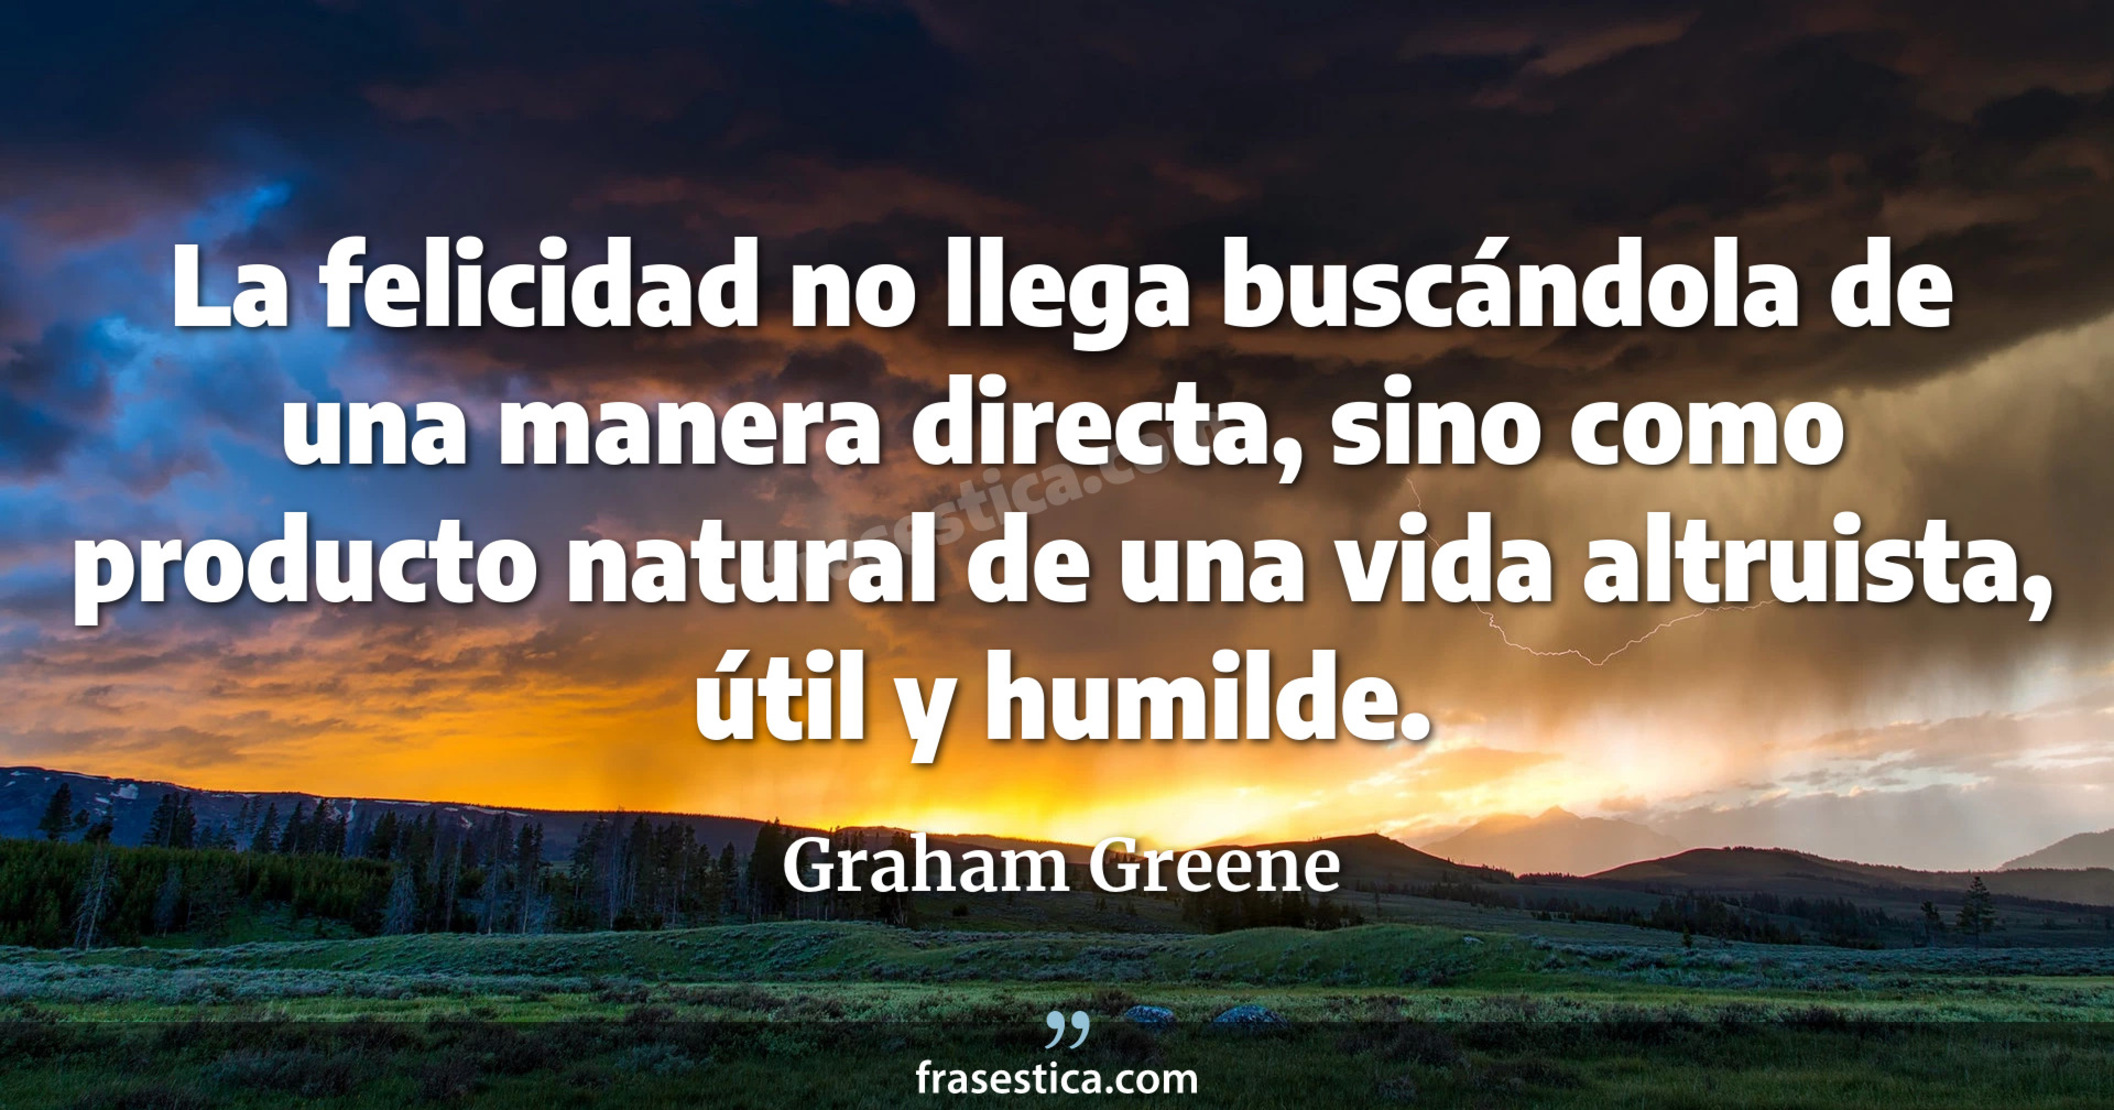 La felicidad no llega buscándola de una manera directa, sino como producto natural de una vida altruista, útil y humilde. - Graham Greene